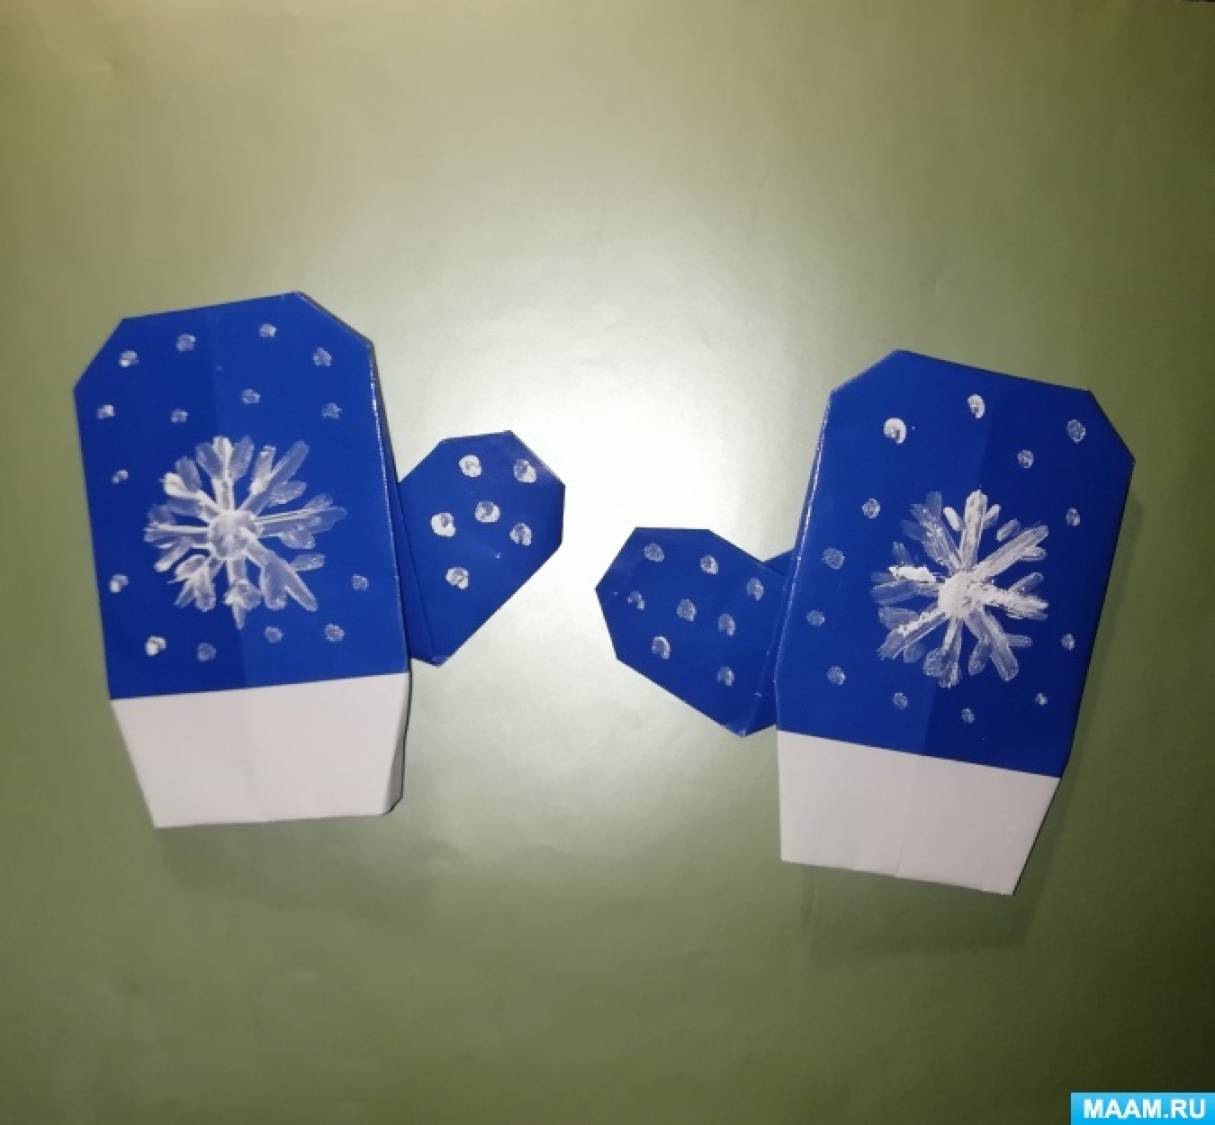 Идеи для личного дневника. Кармашки оригами! | Encuadernacion